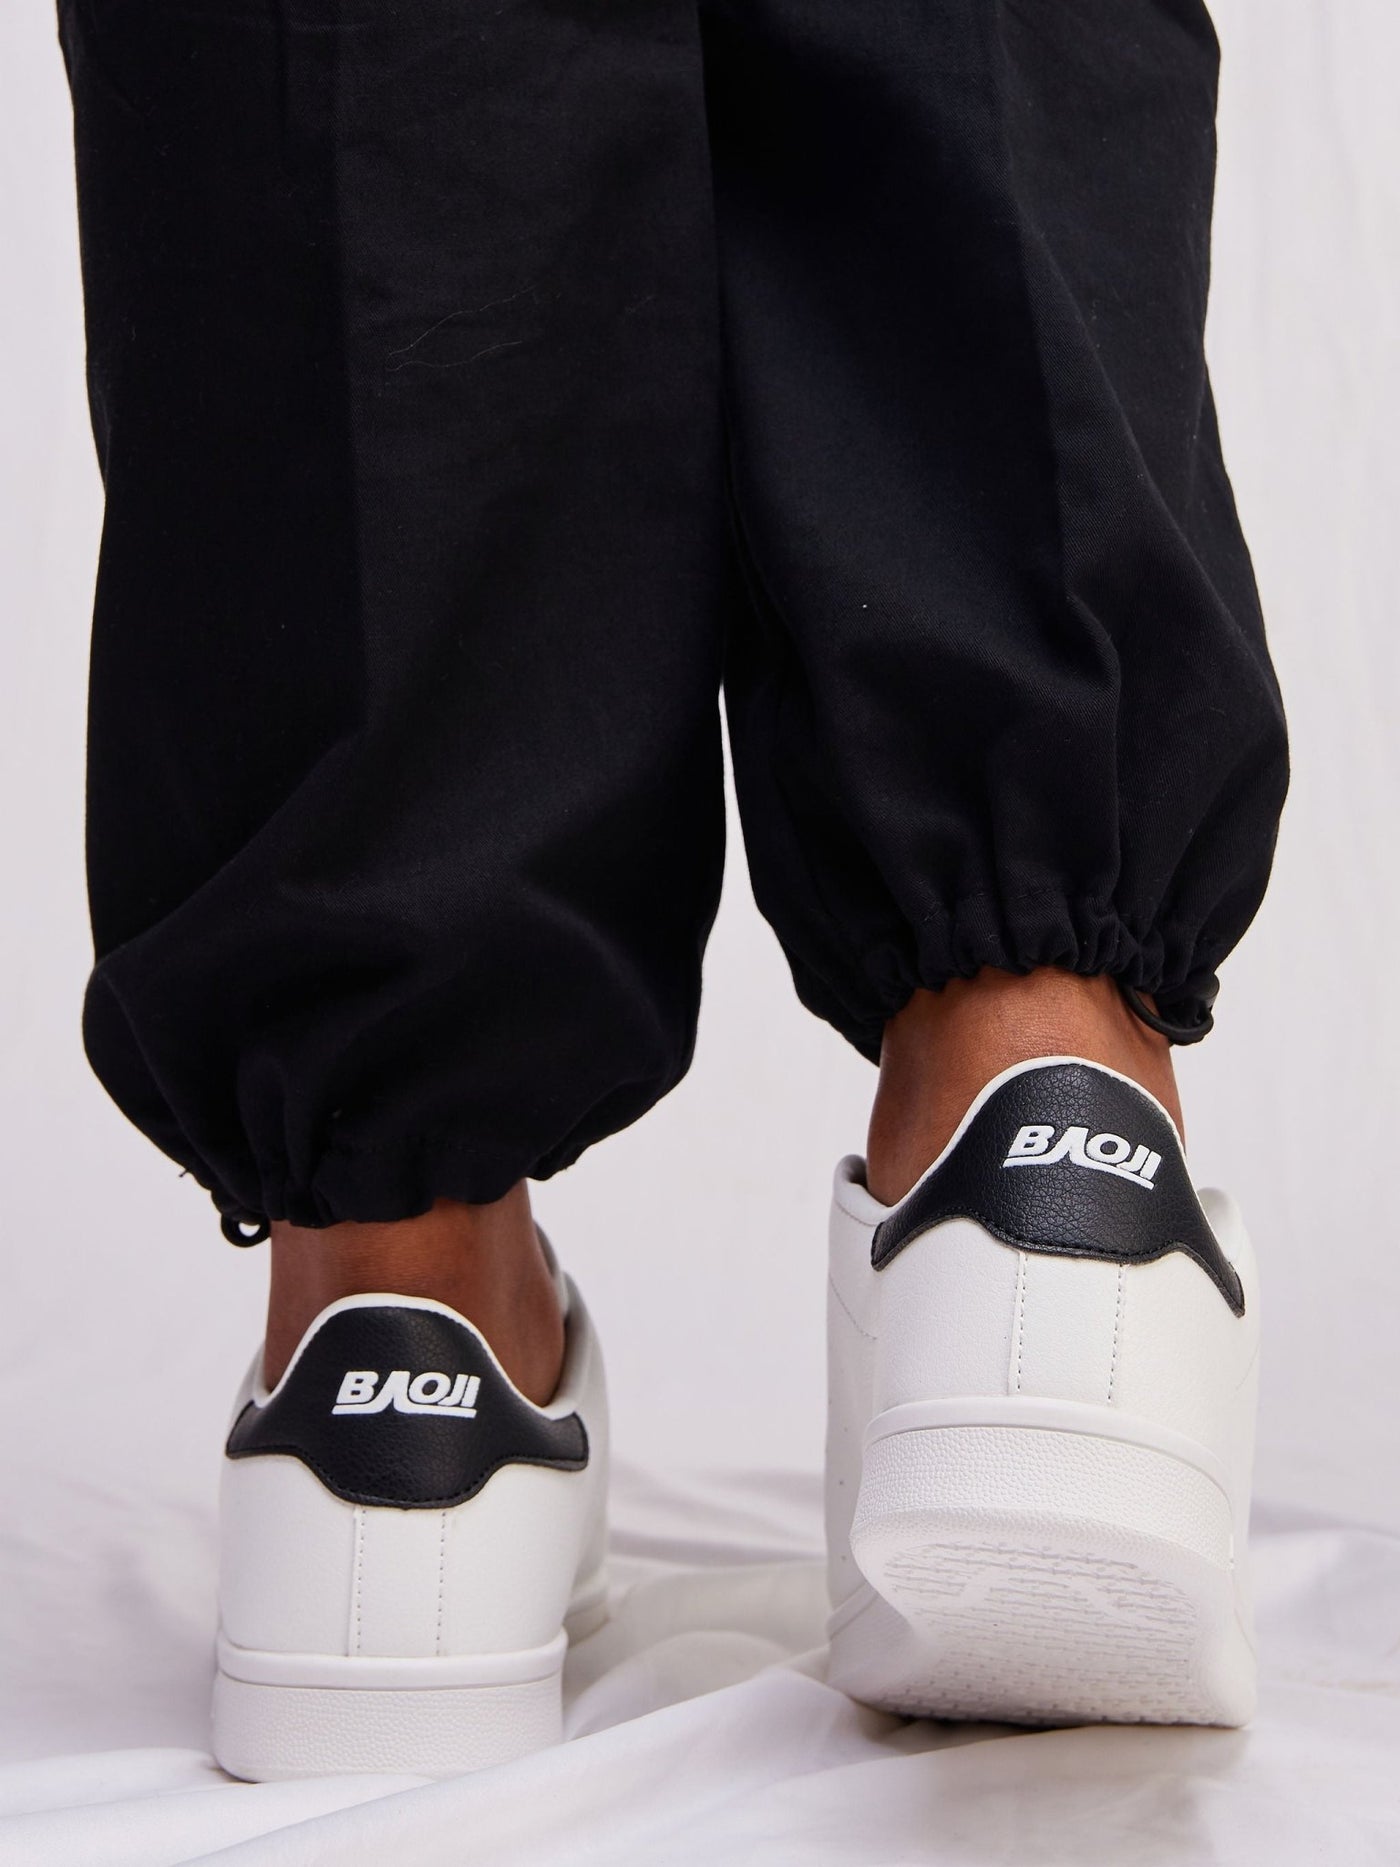 Ziatu Women's Colour Pop Sneakers - Black / White - Shopzetu